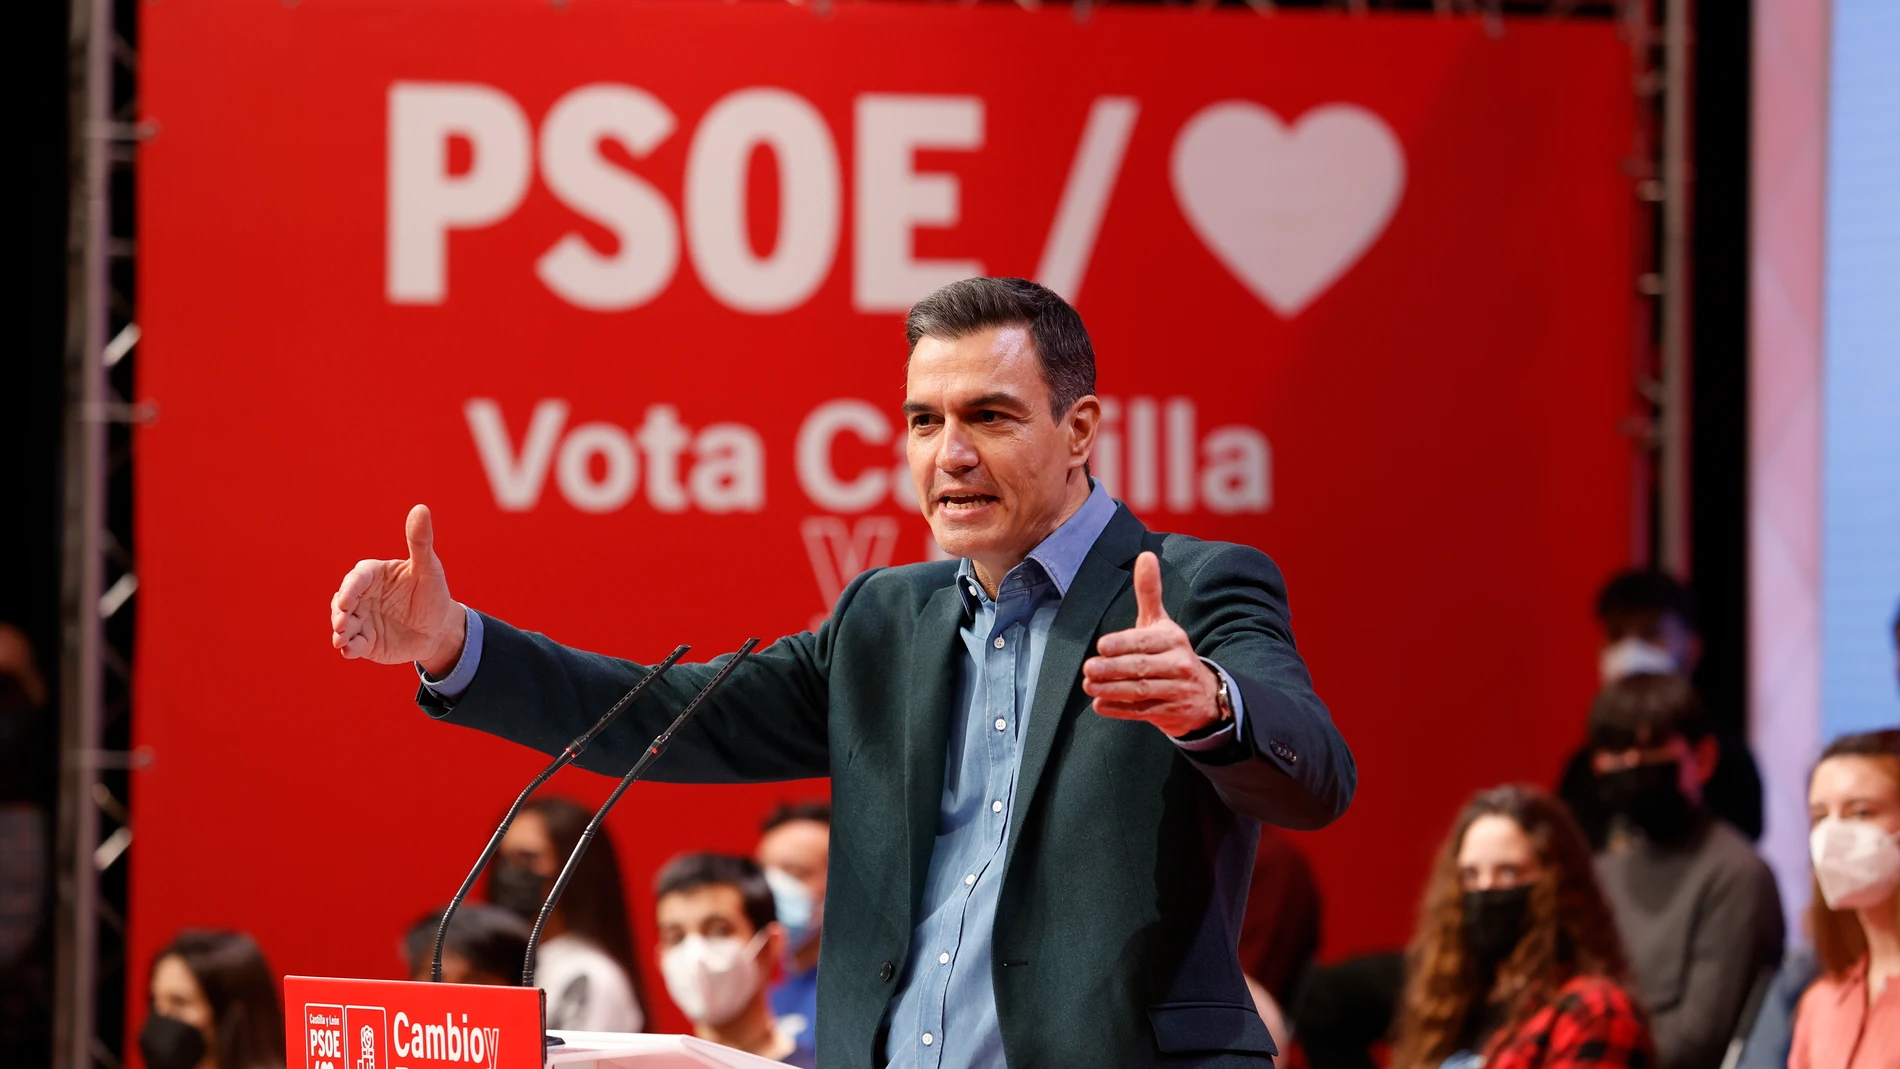 El presidente del Gobierno, Pedro Sánchez, interviene en un acto público de la campaña electoral de Castilla y León, en el Palacio de la Audiencia de Soria